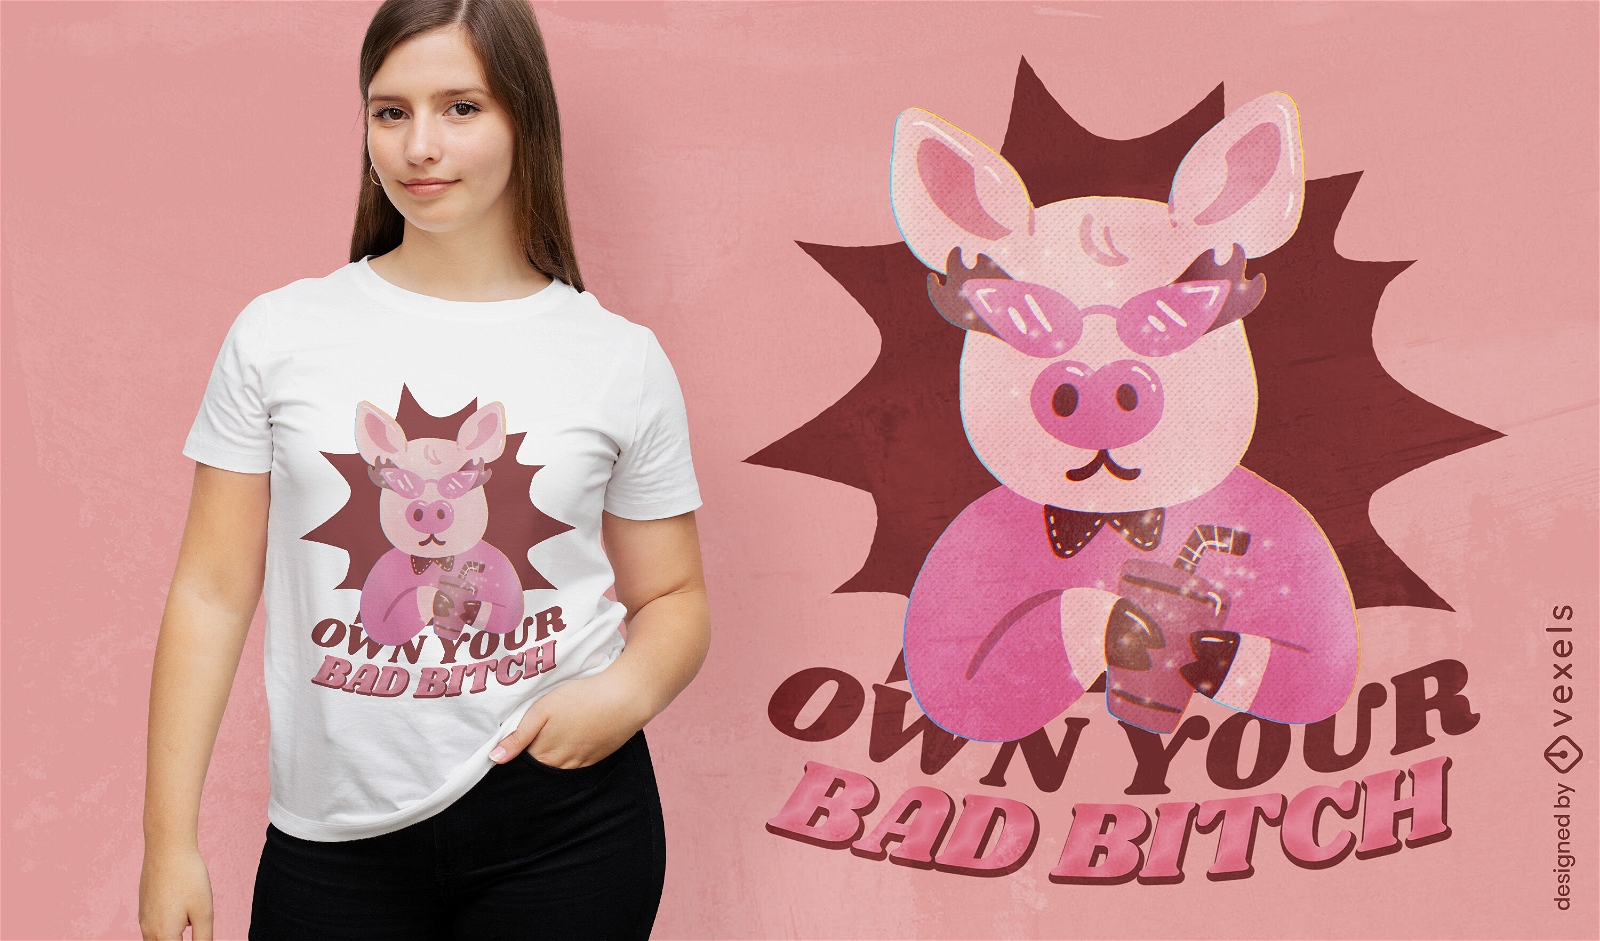 Dise?o de camiseta de cerdo feroz.